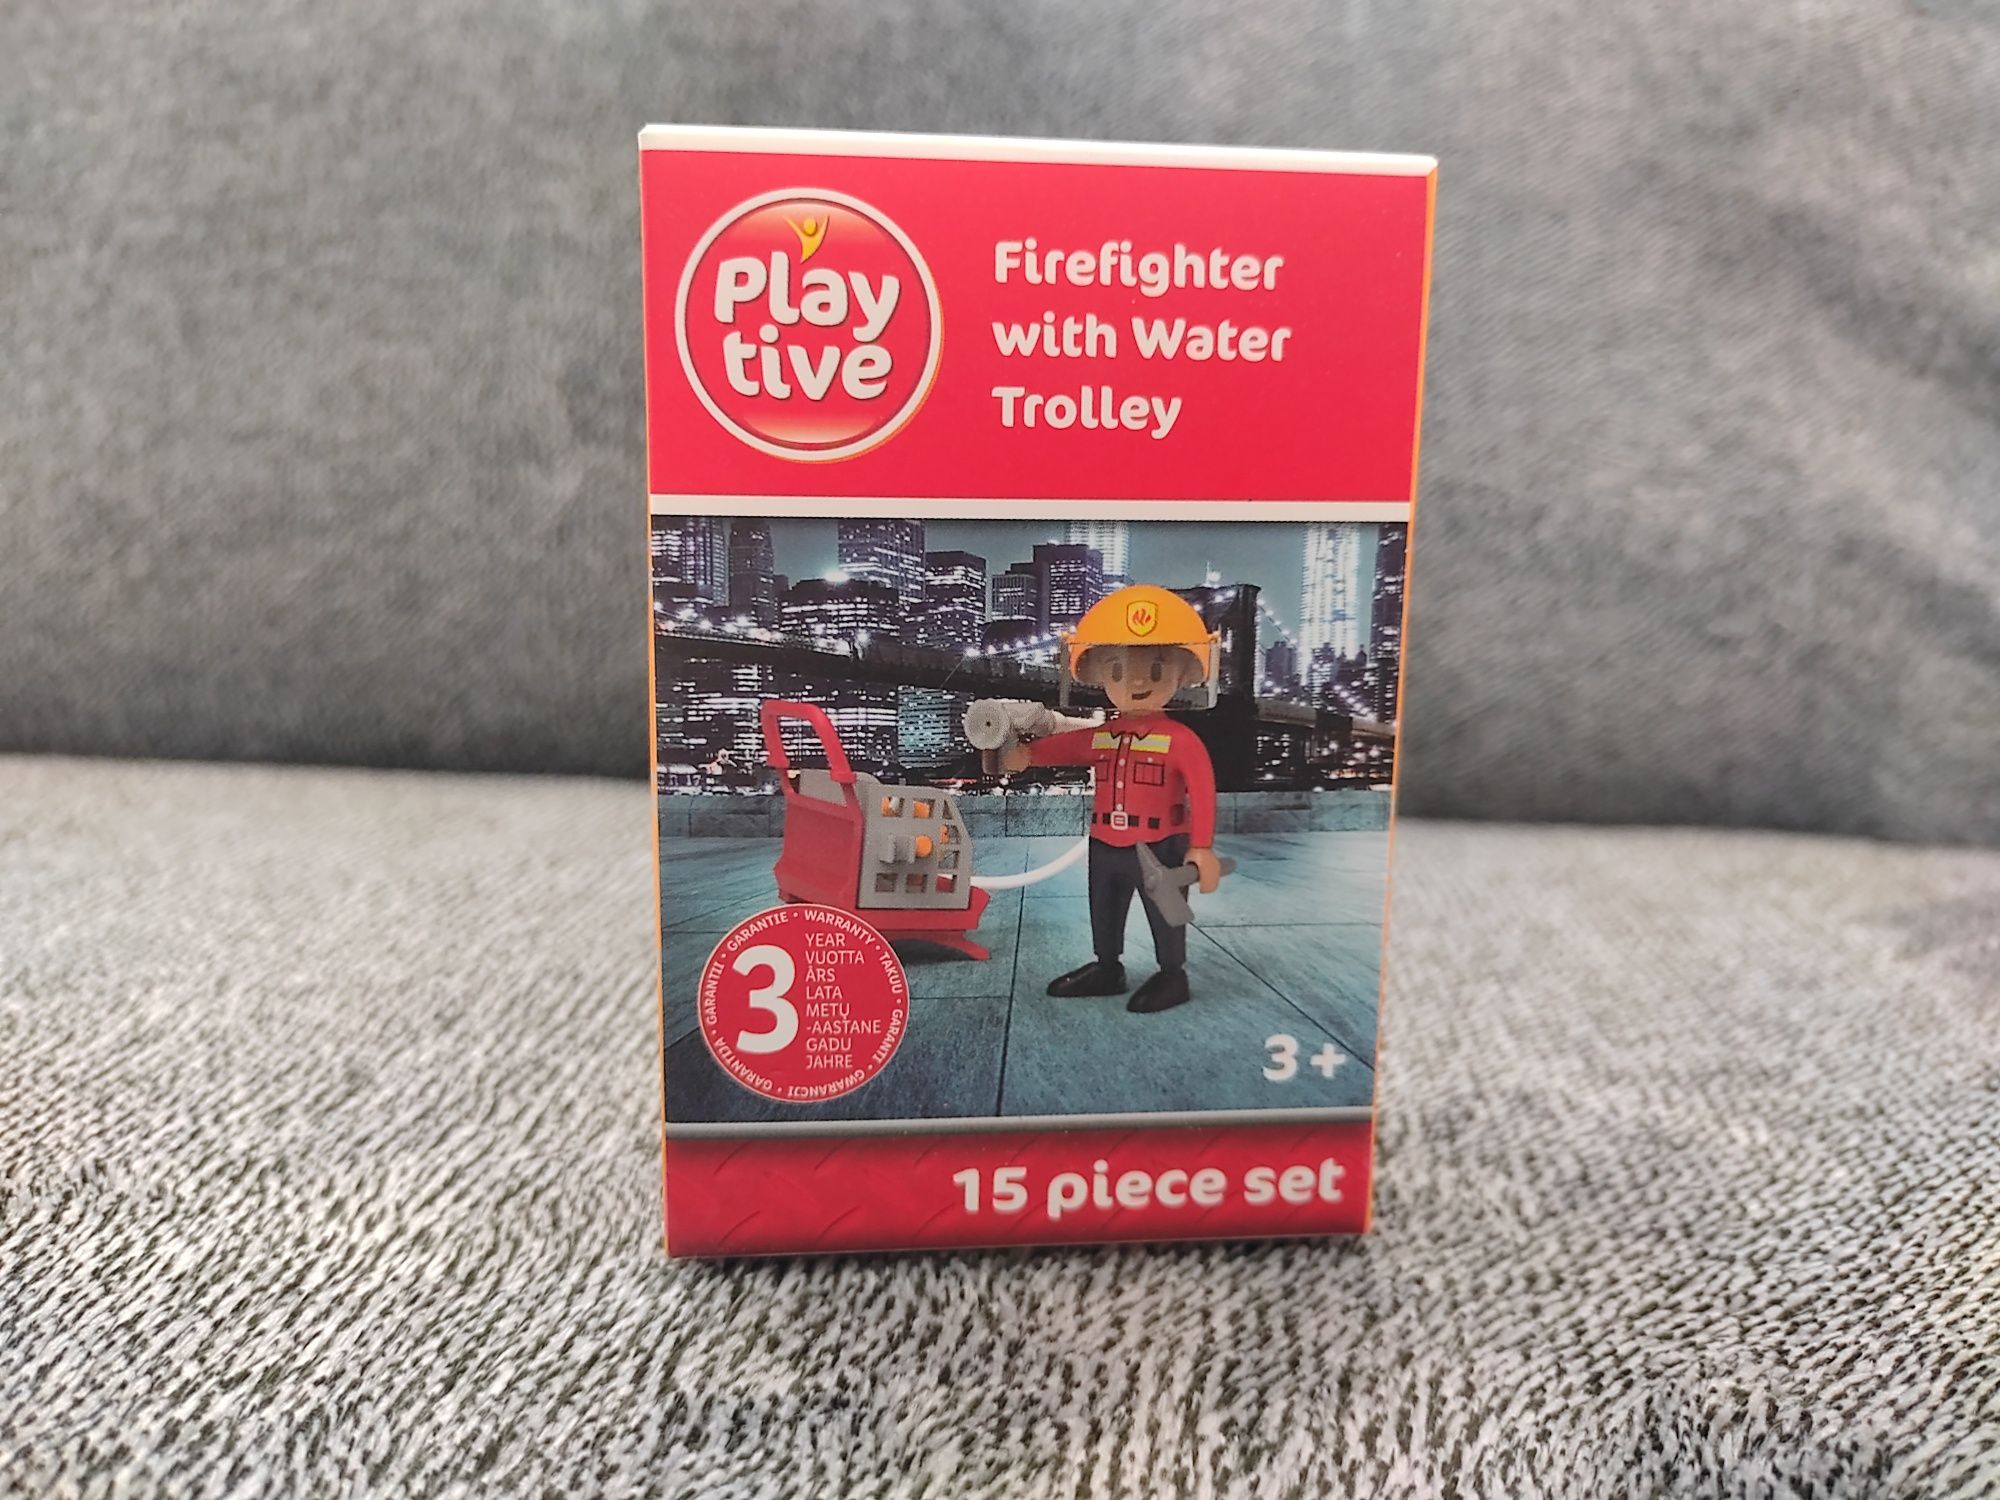 Zabawka dla chłopca elementy do składania Wóz strażacki Strażak Sam